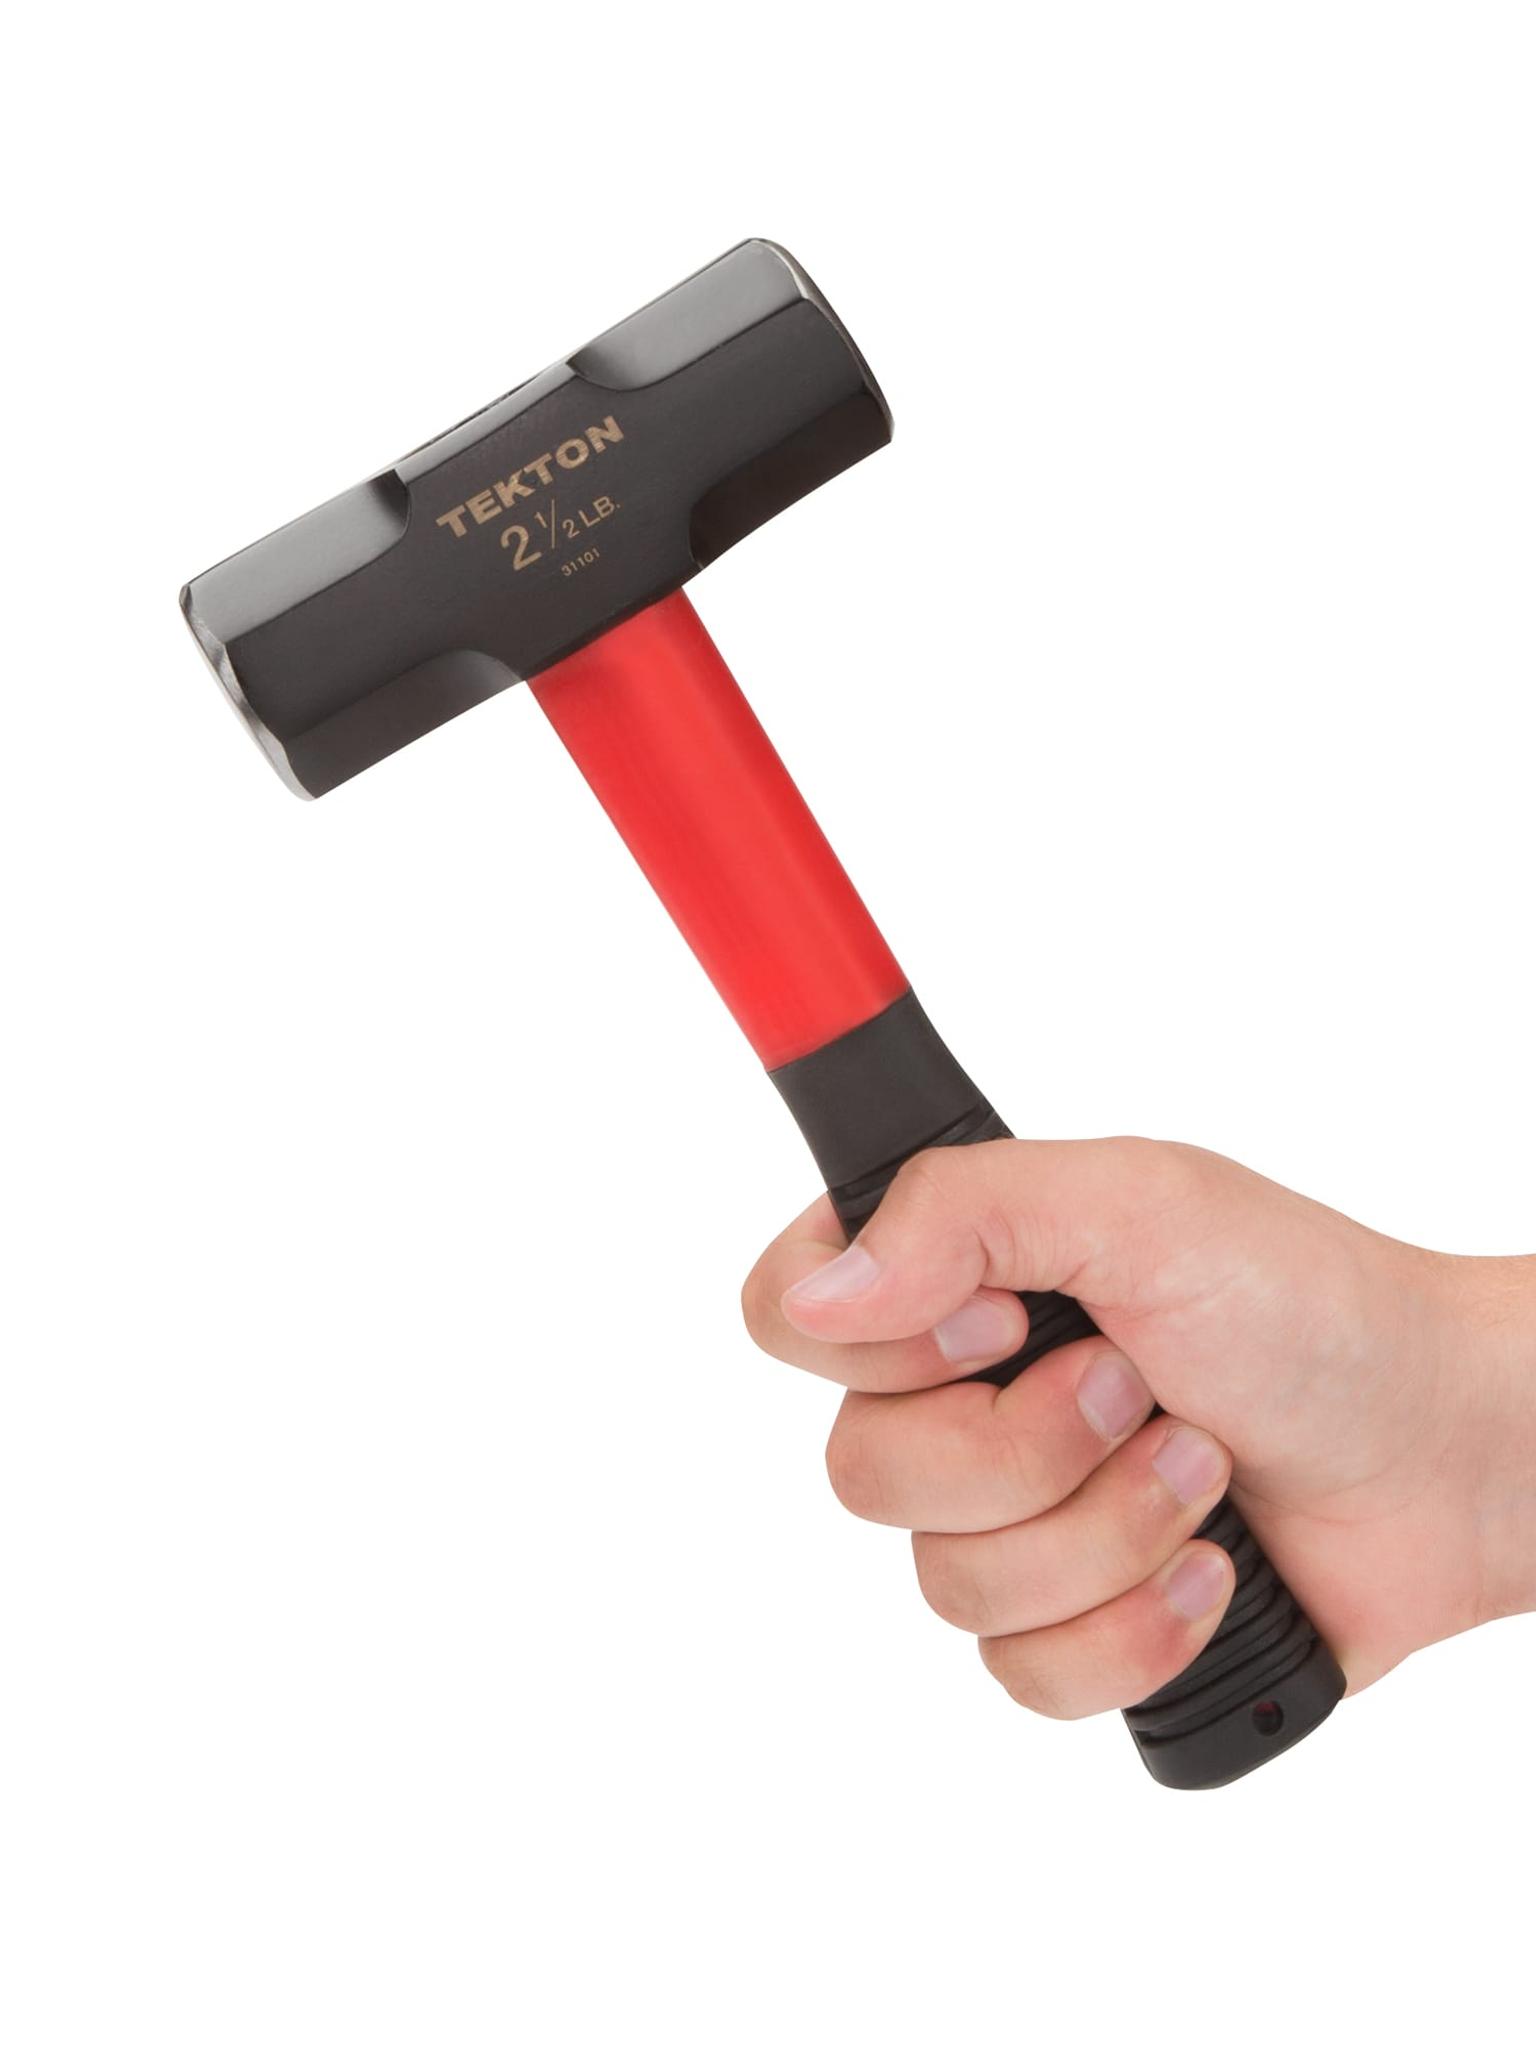 TEKTON 31101 2-1/2 lb. Stubby Sledge Hammer